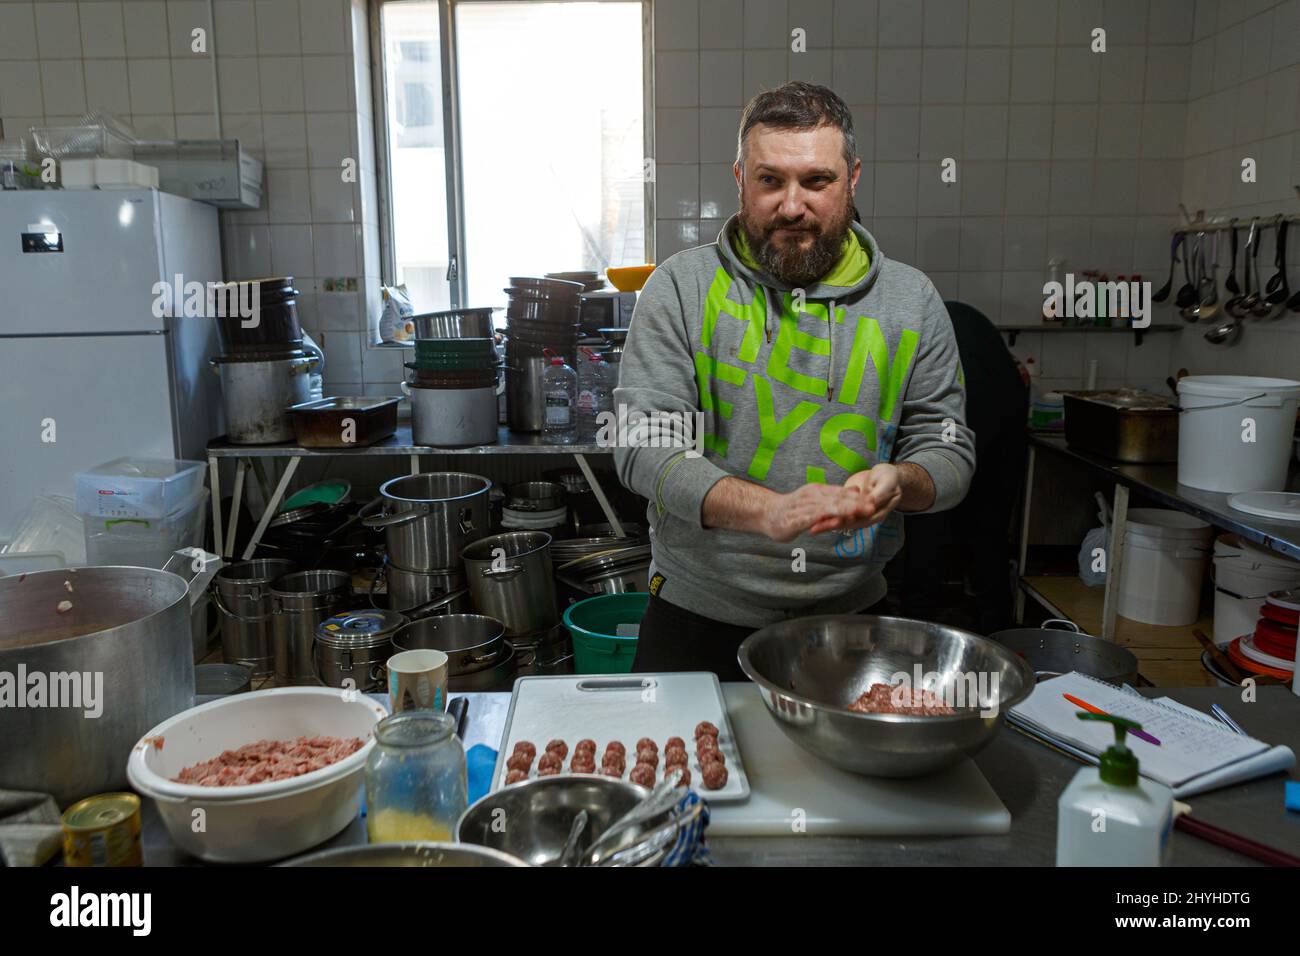 USCHHOROD, UKRAINE - 14. MÄRZ 2022 - Ein Freiwilliger rollt Fleischbällchen in einem Restaurant, das kostenlose Mahlzeiten für Binnenvertriebene anbietet, die aus dem Ru fliehen Stockfoto